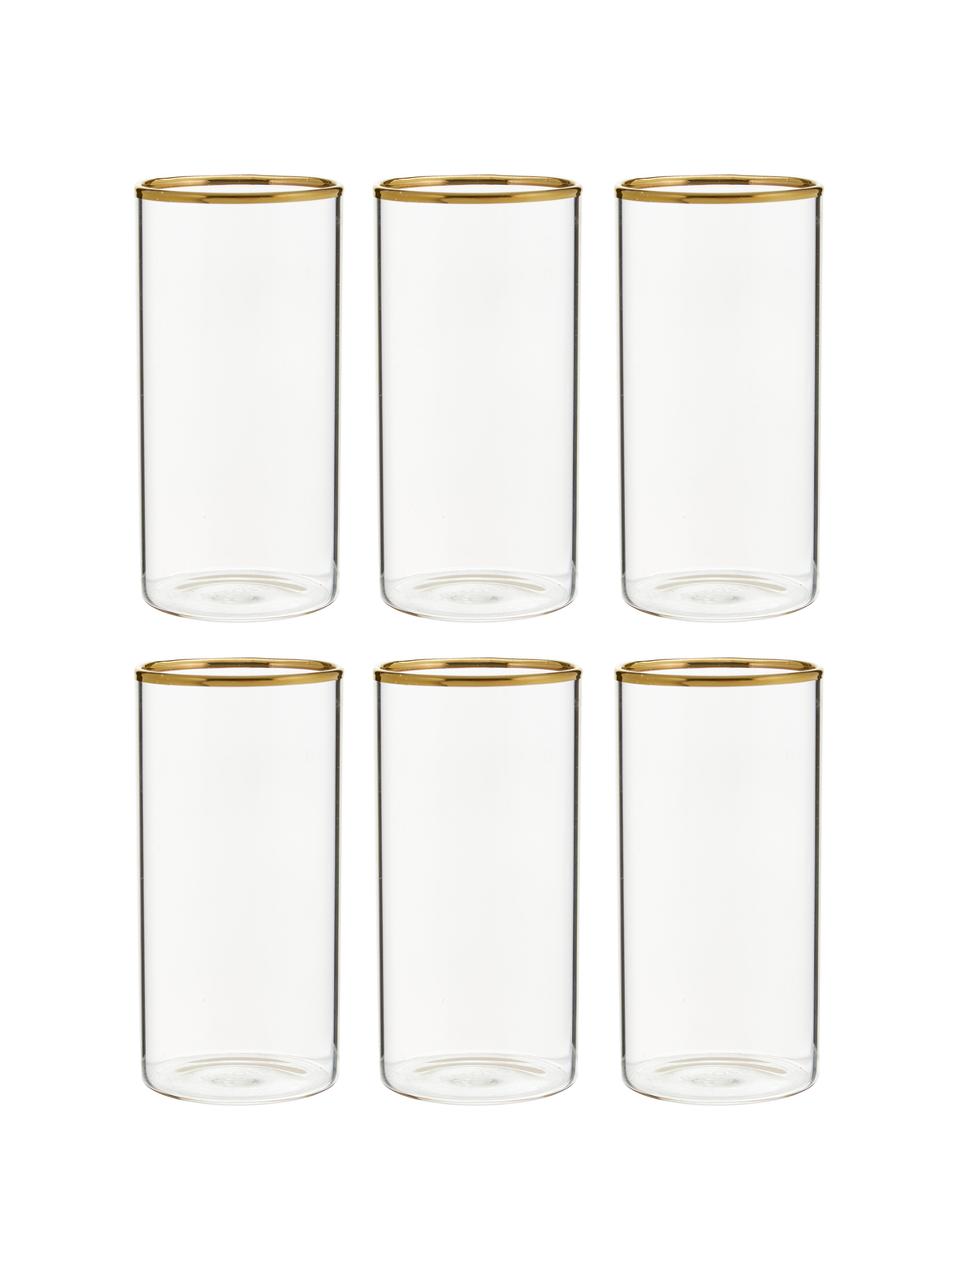 Wassergläser Boro aus Borosilikatglas mit goldfarbenem Rand, 6 Stück , Borosilikatglas, Transparent, Goldfarben, Ø 6 x H 12 cm